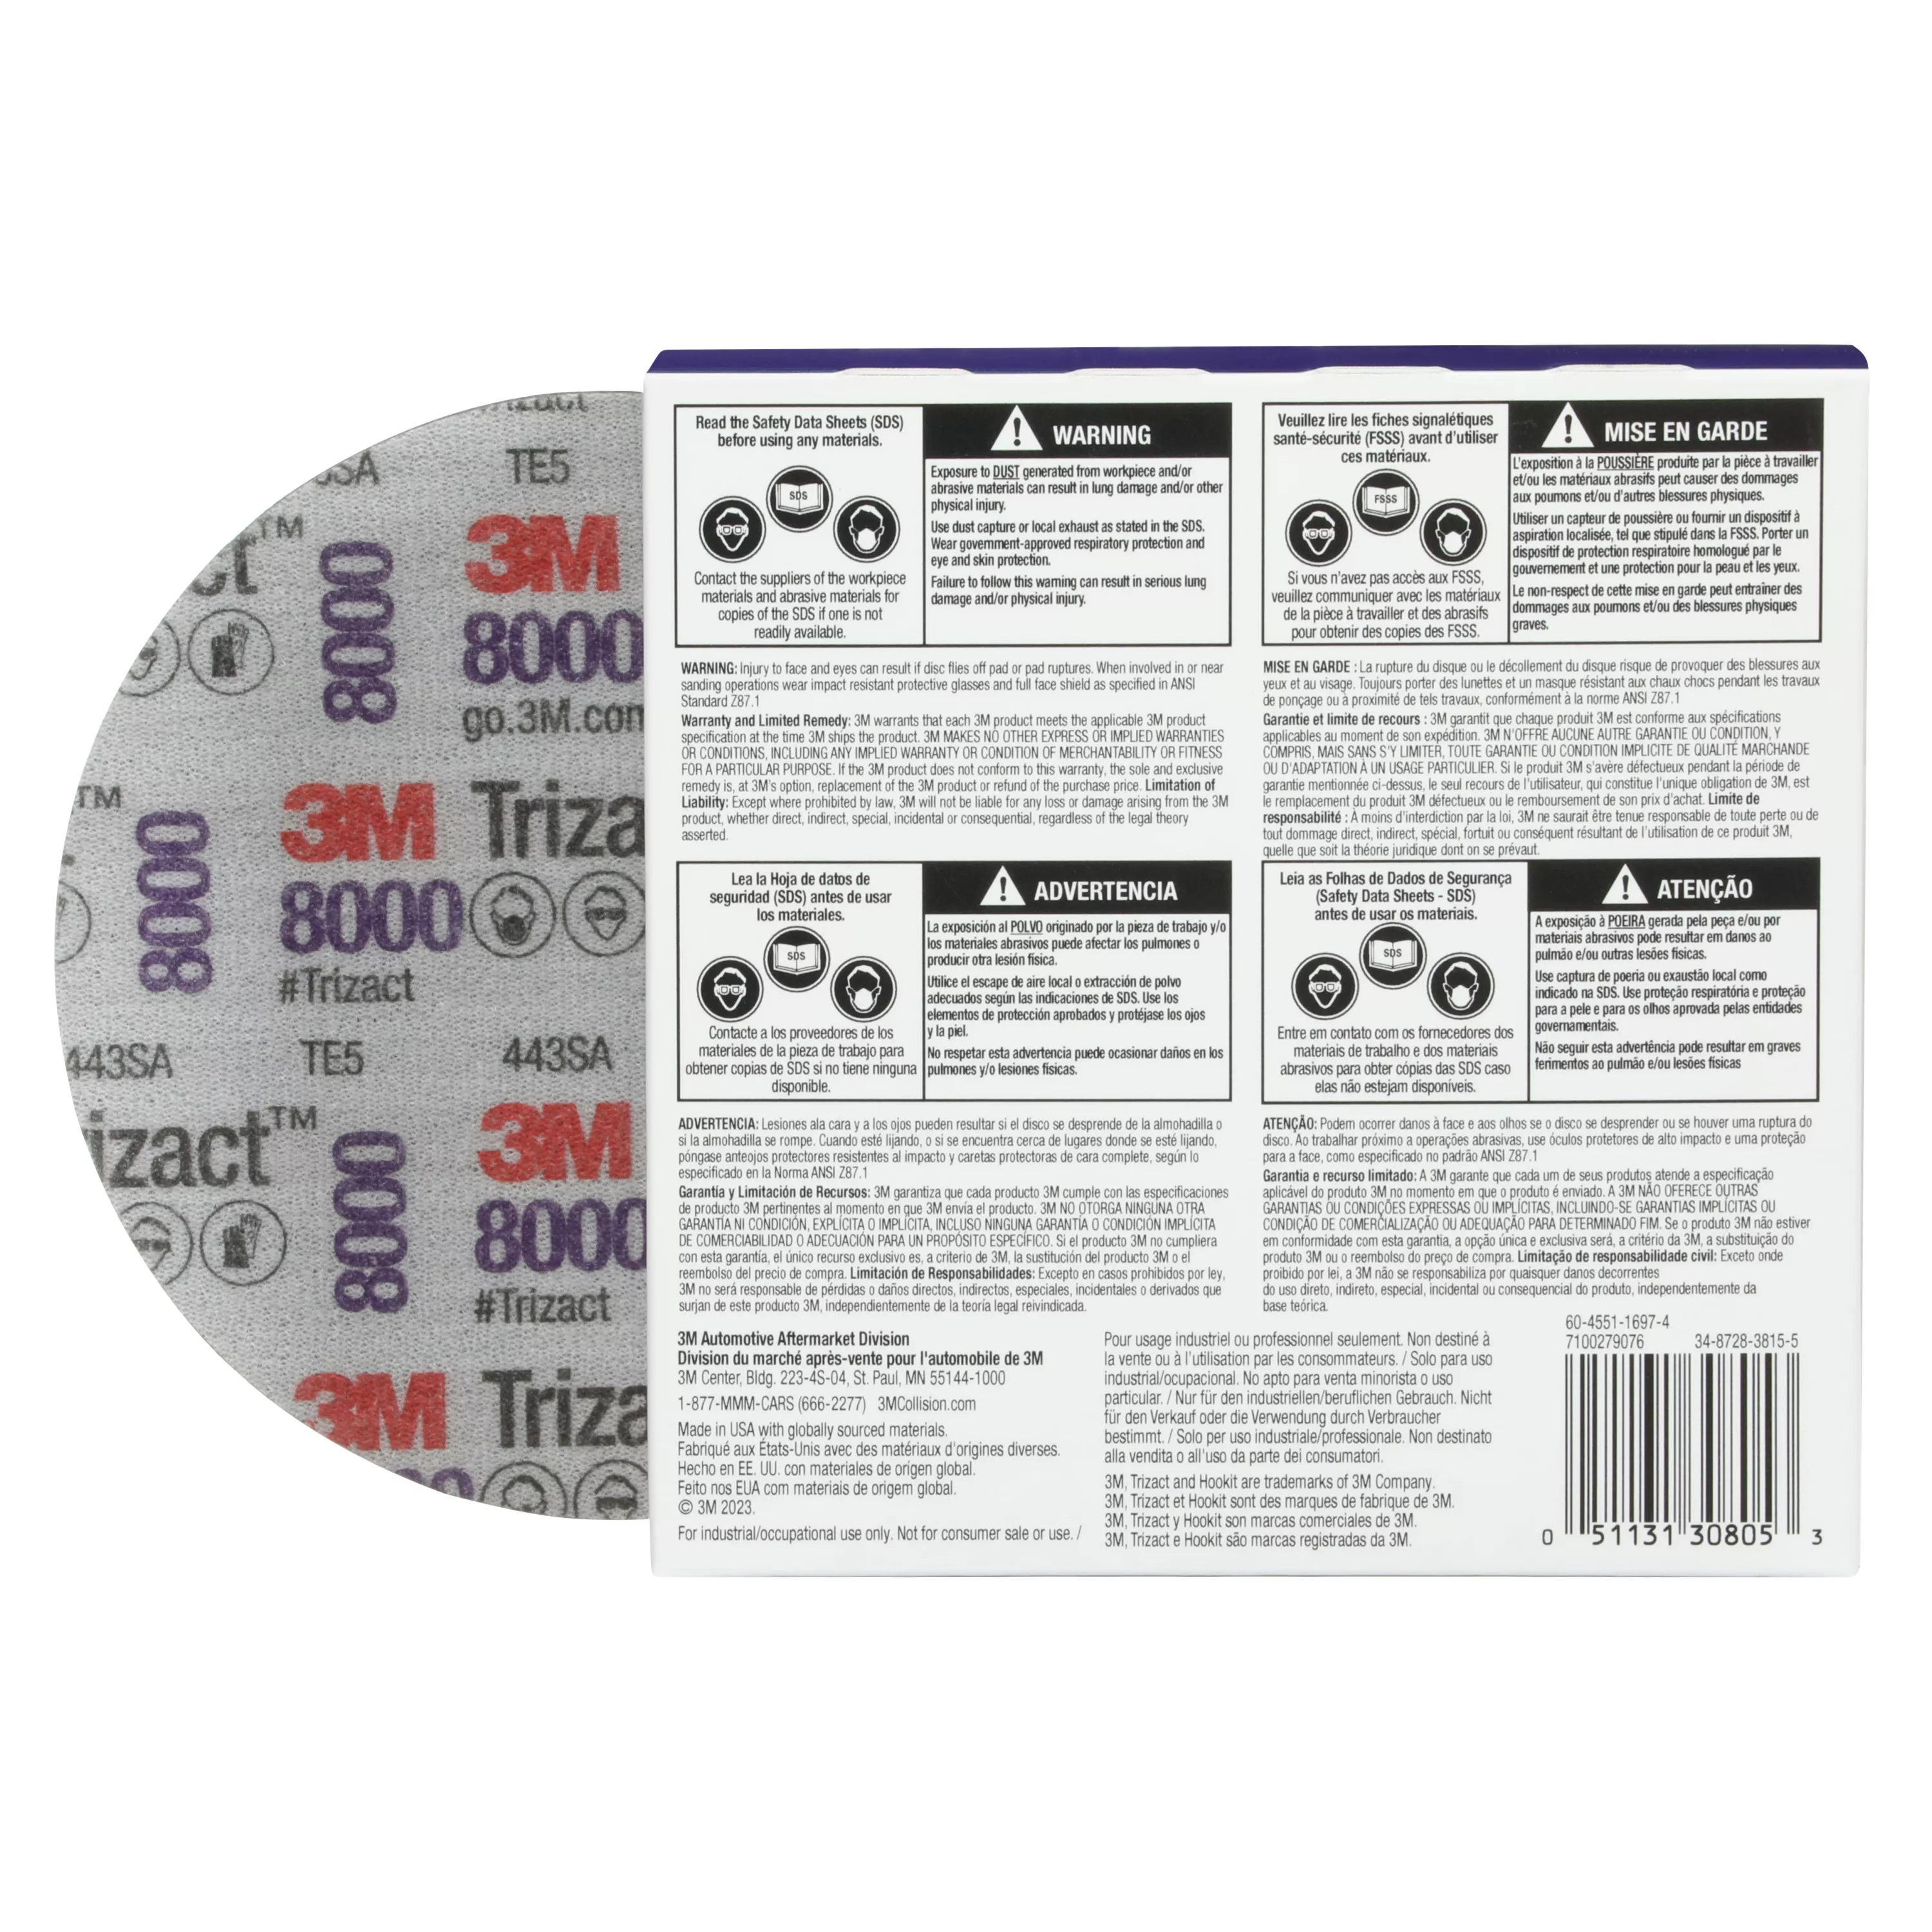 UPC 00051131308053 | 3M™ Trizact™ Hookit™ Foam Disc 30805